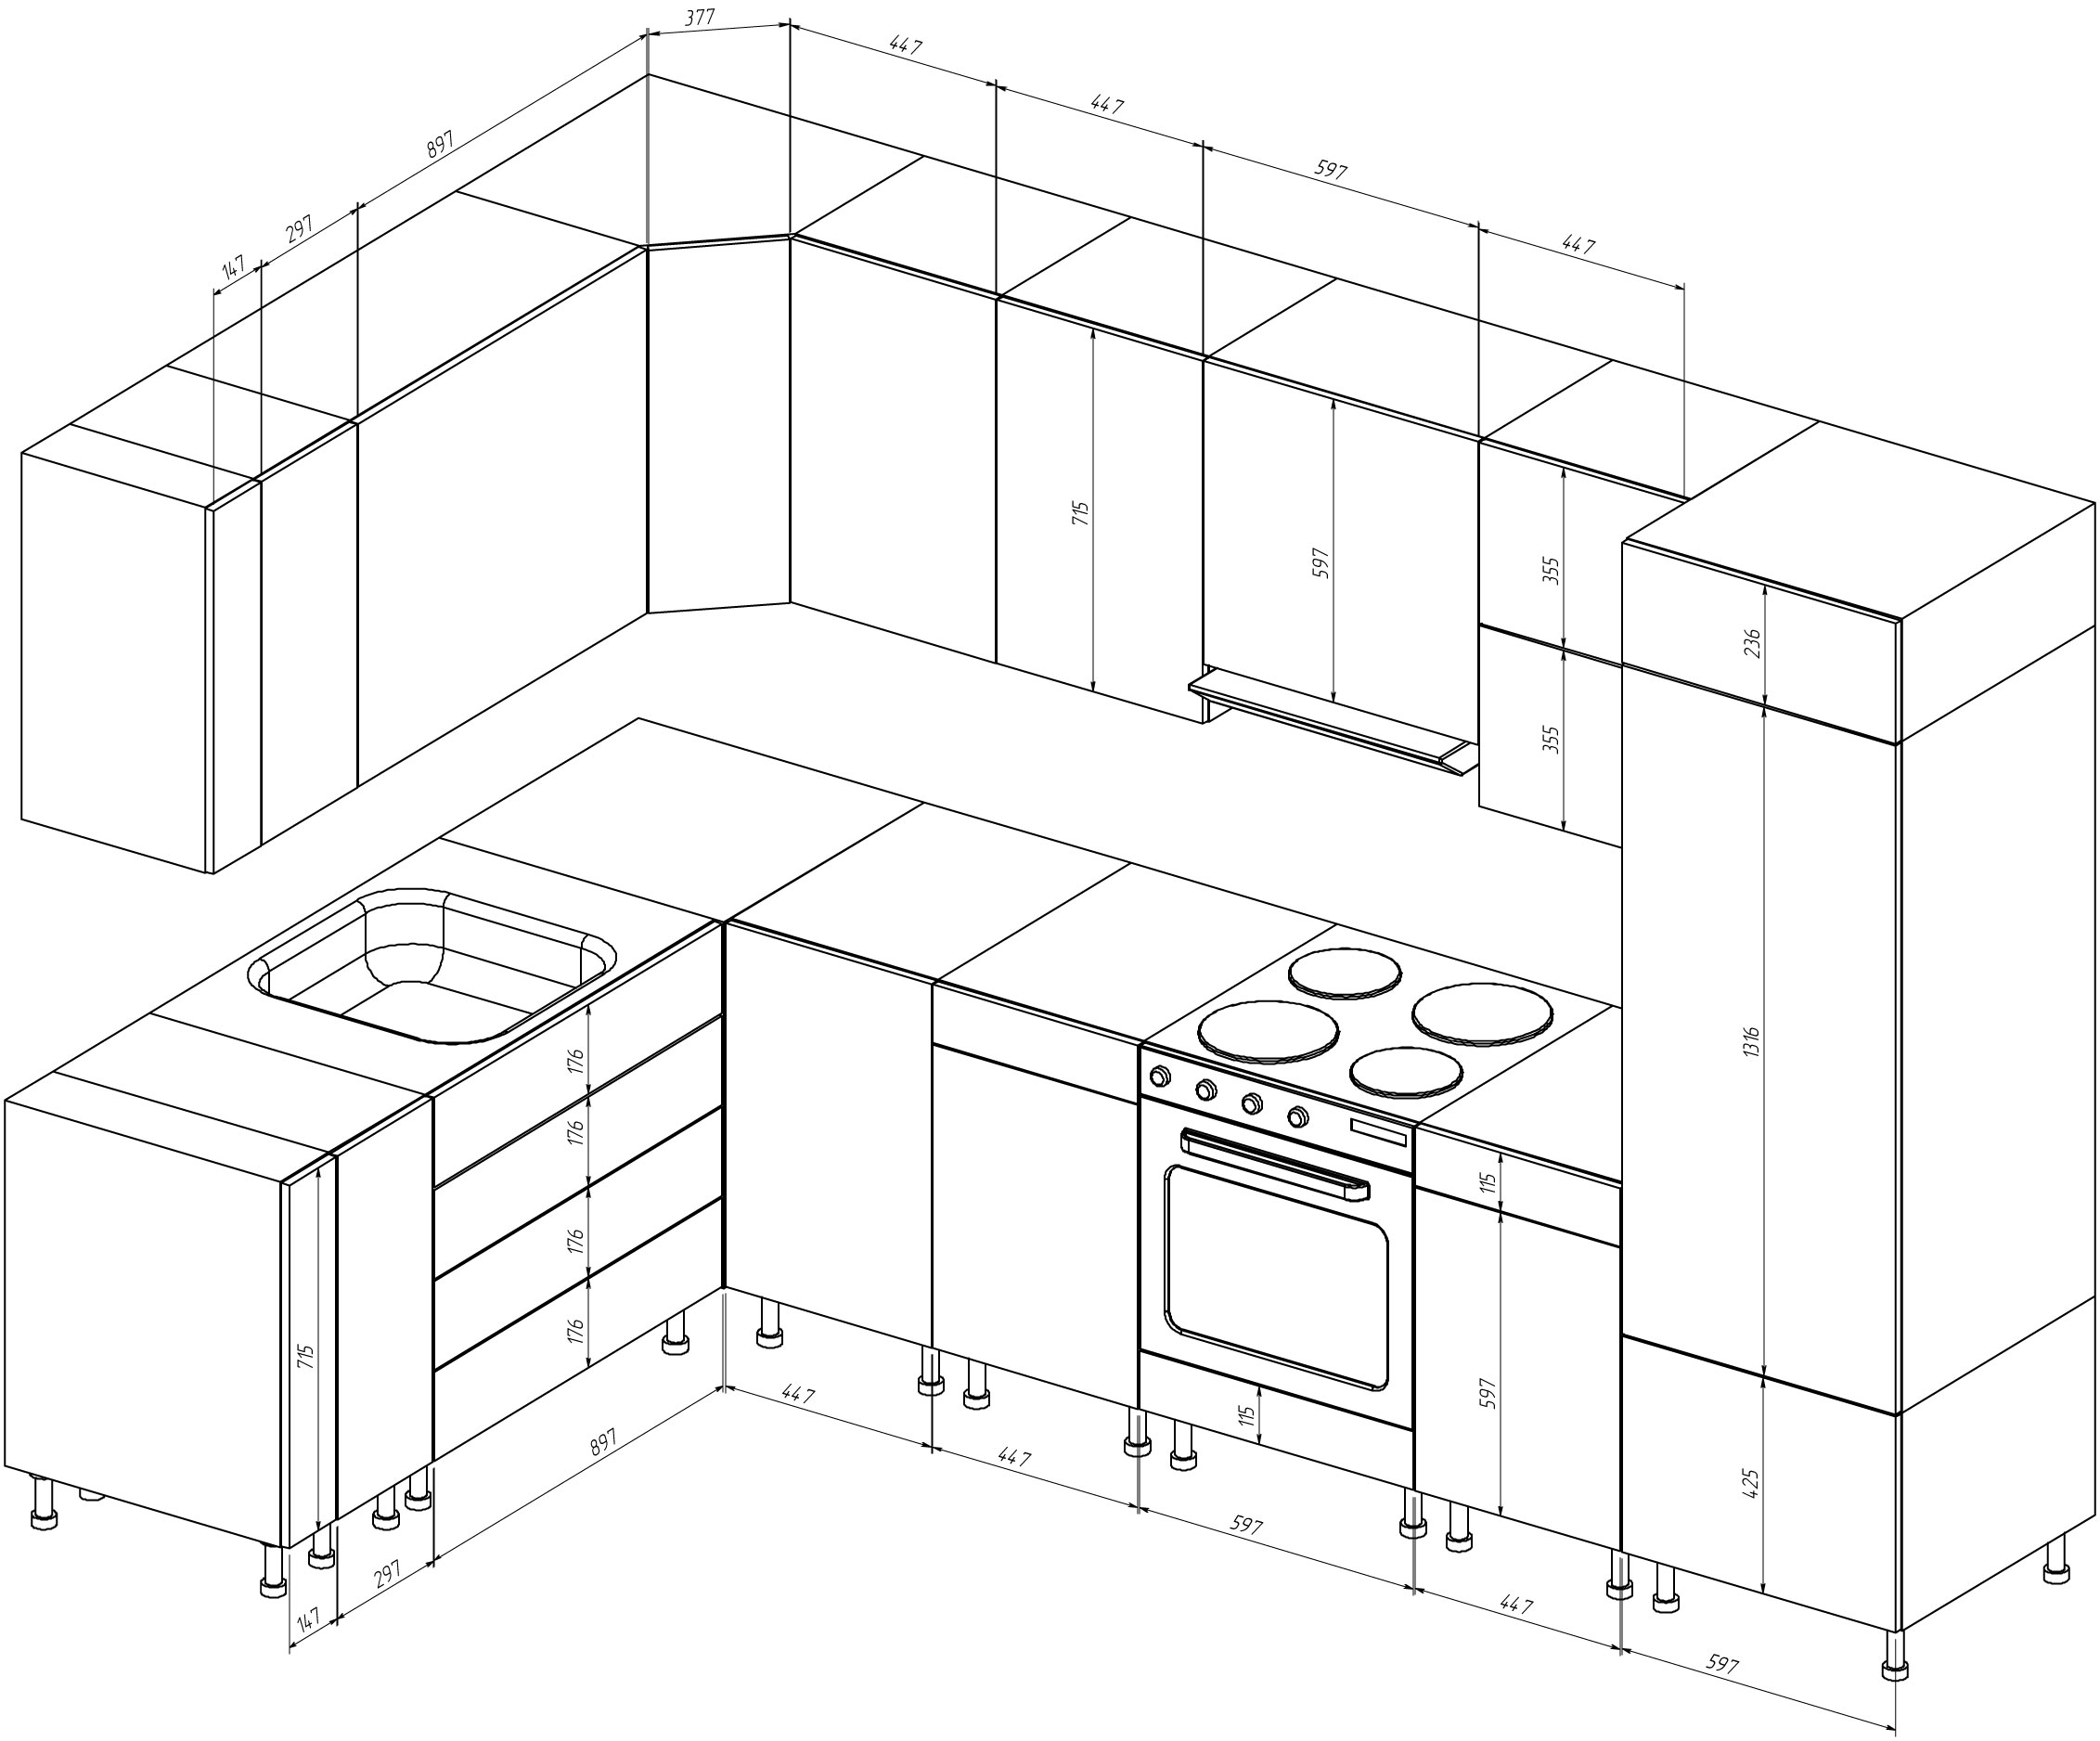 Размеры встроенных шкафов в кухне